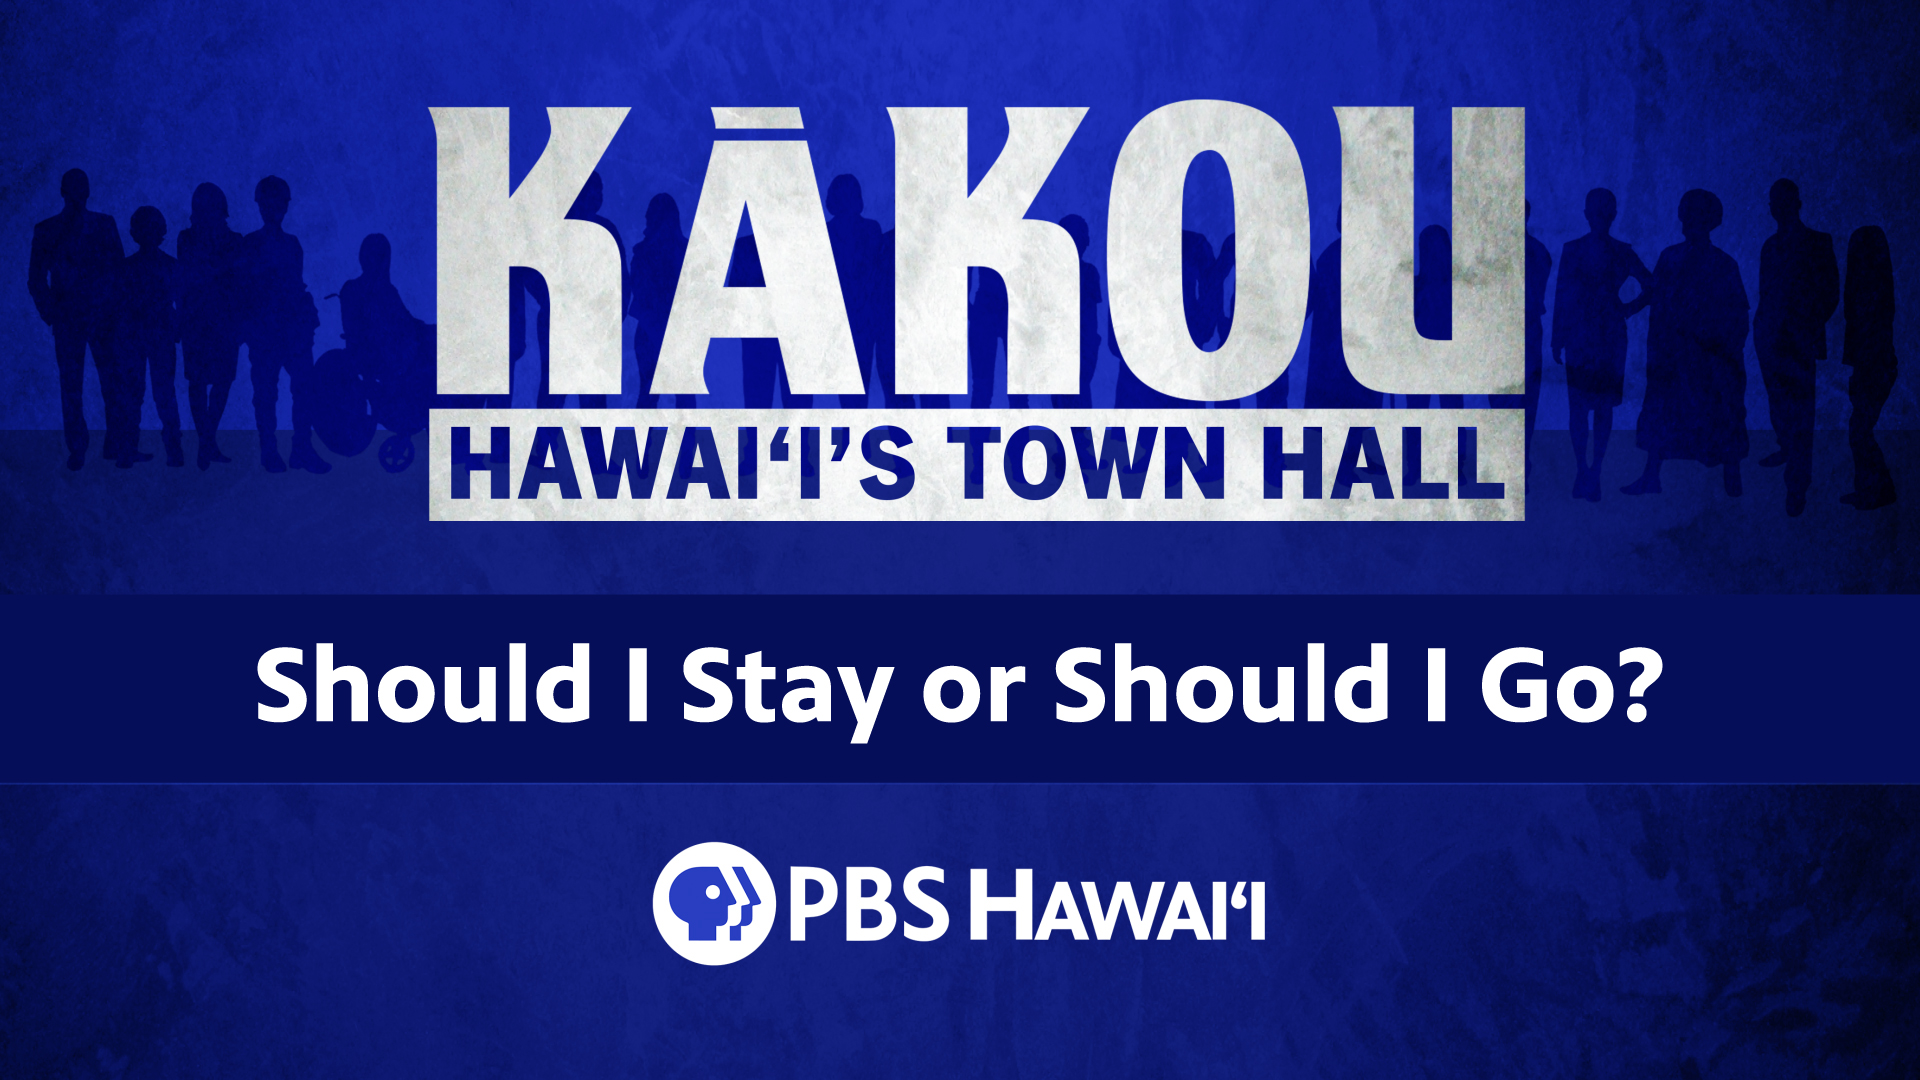 KĀKOU-Hawaiʻi’s Town Hall <br/>Should I Stay or Should I Go?